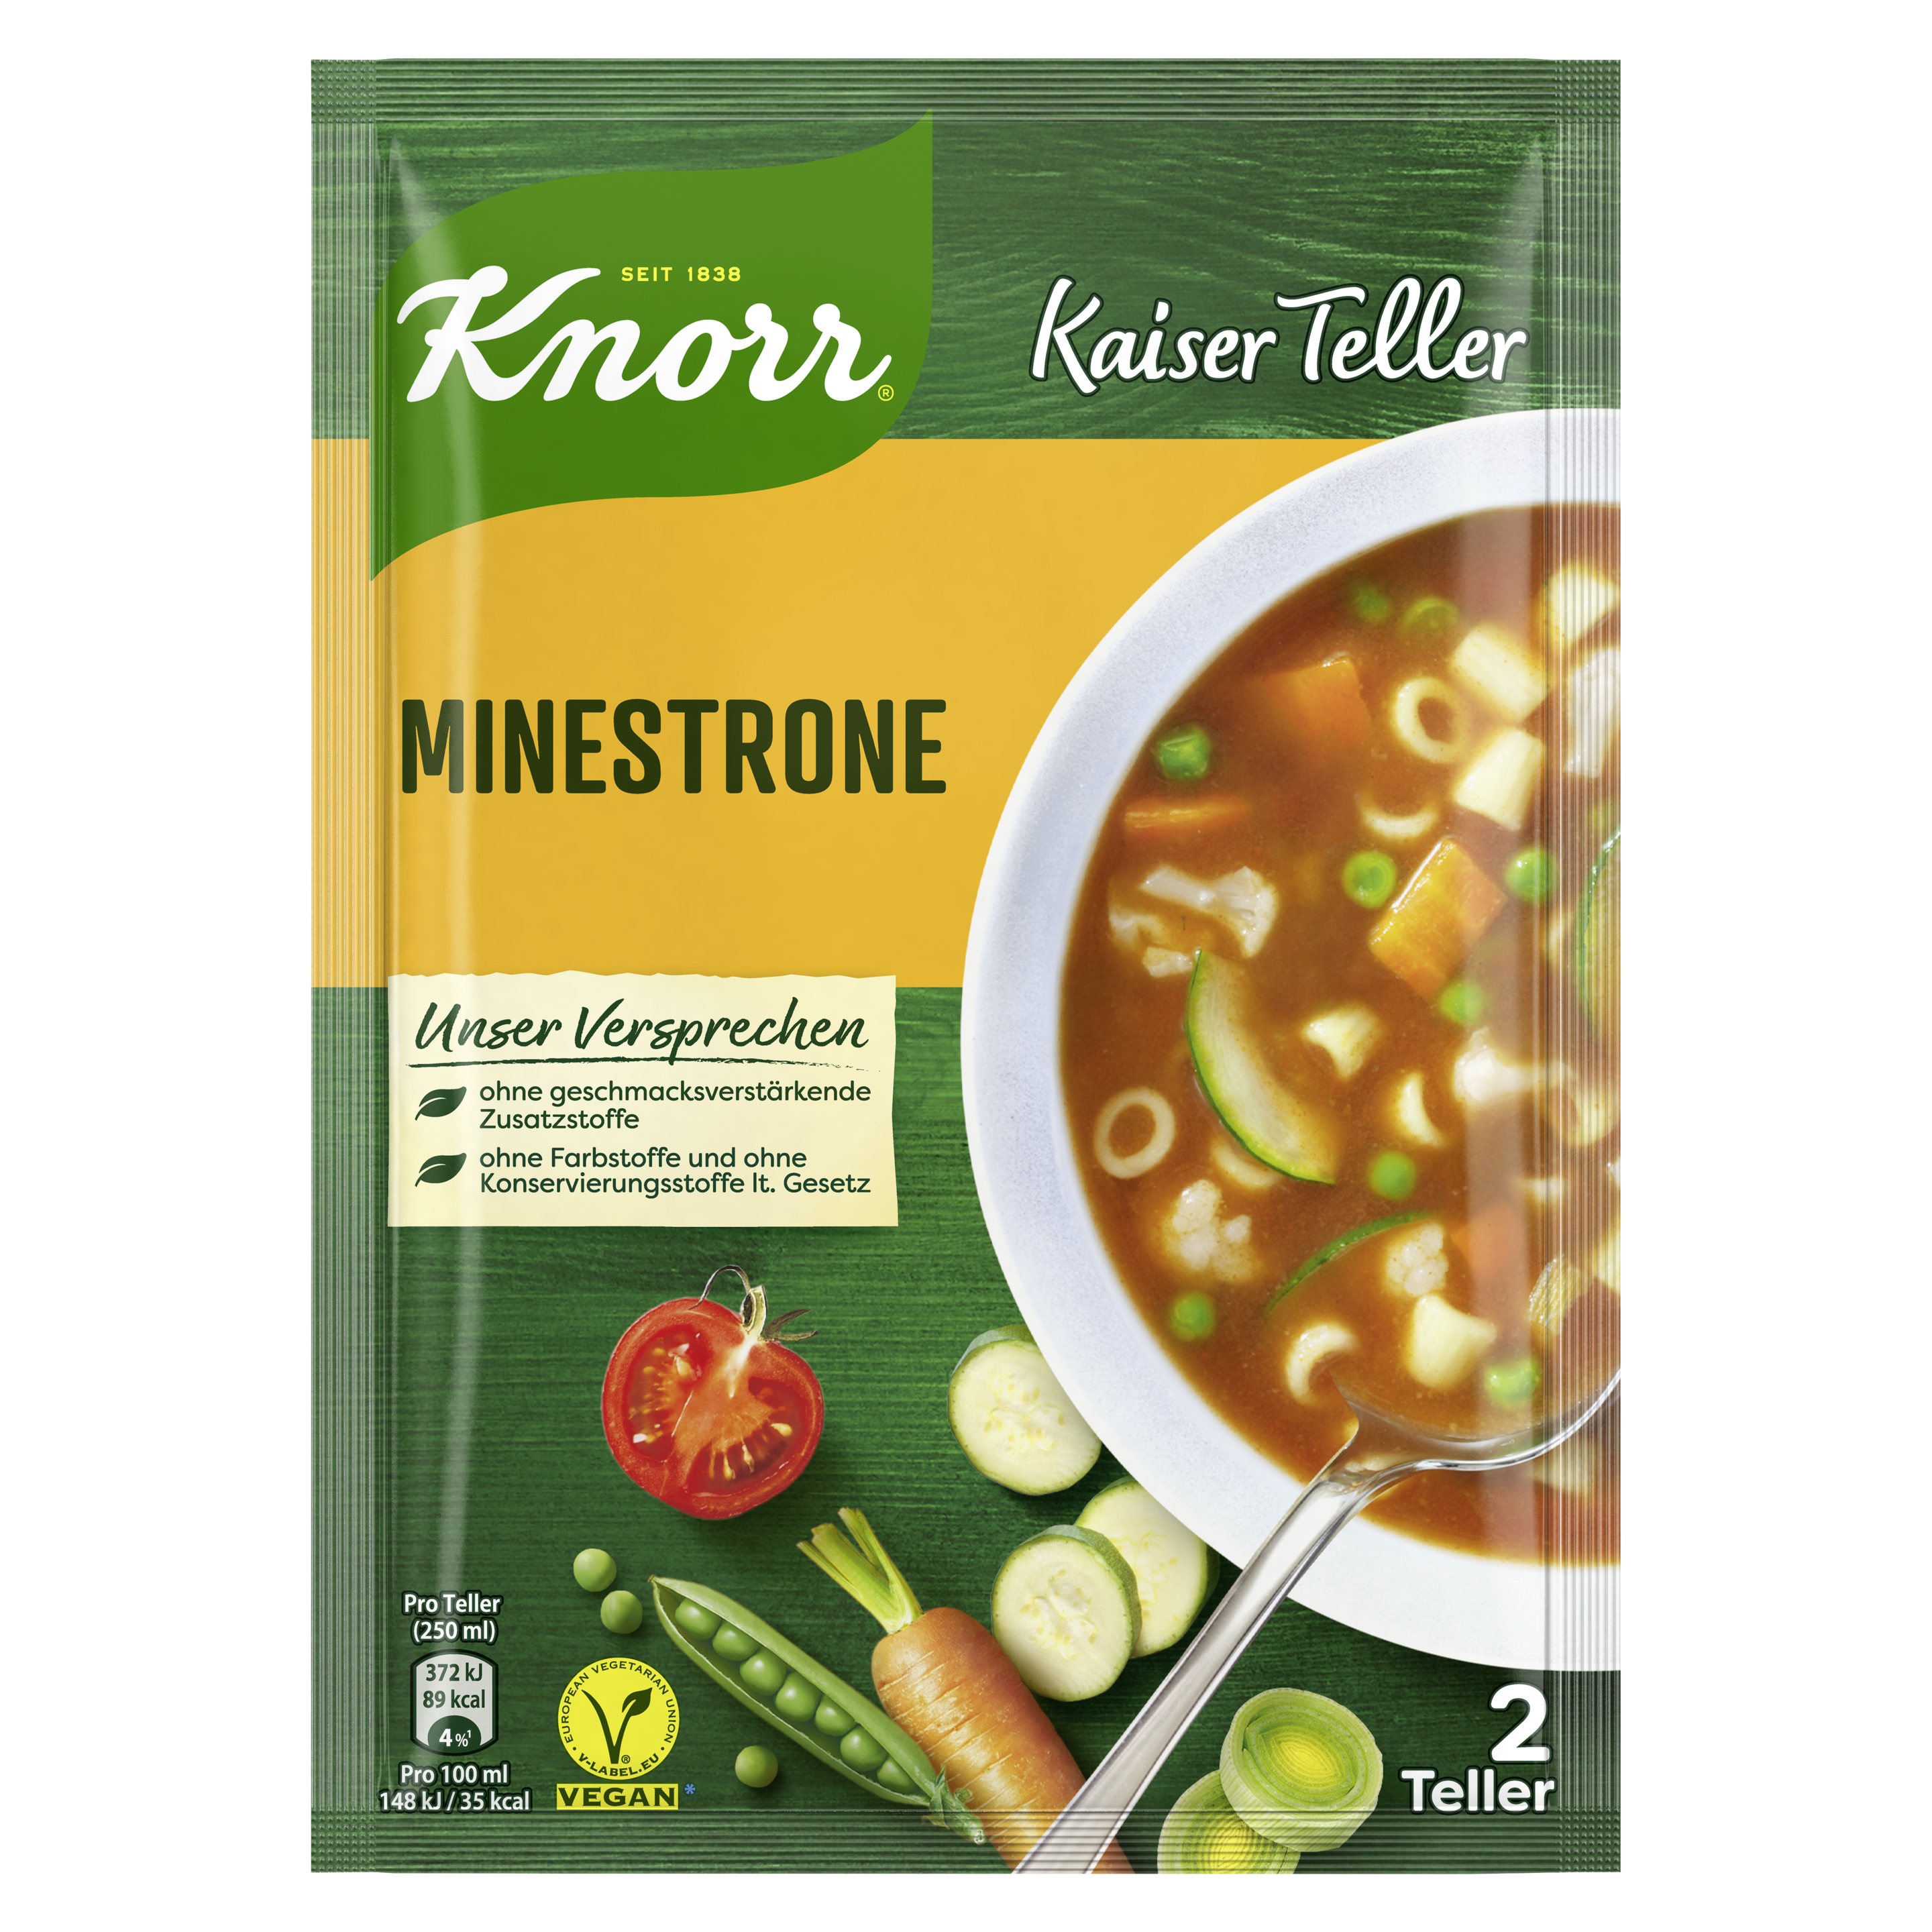 Knorr Kaiser Teller Minestrone 2 Teller